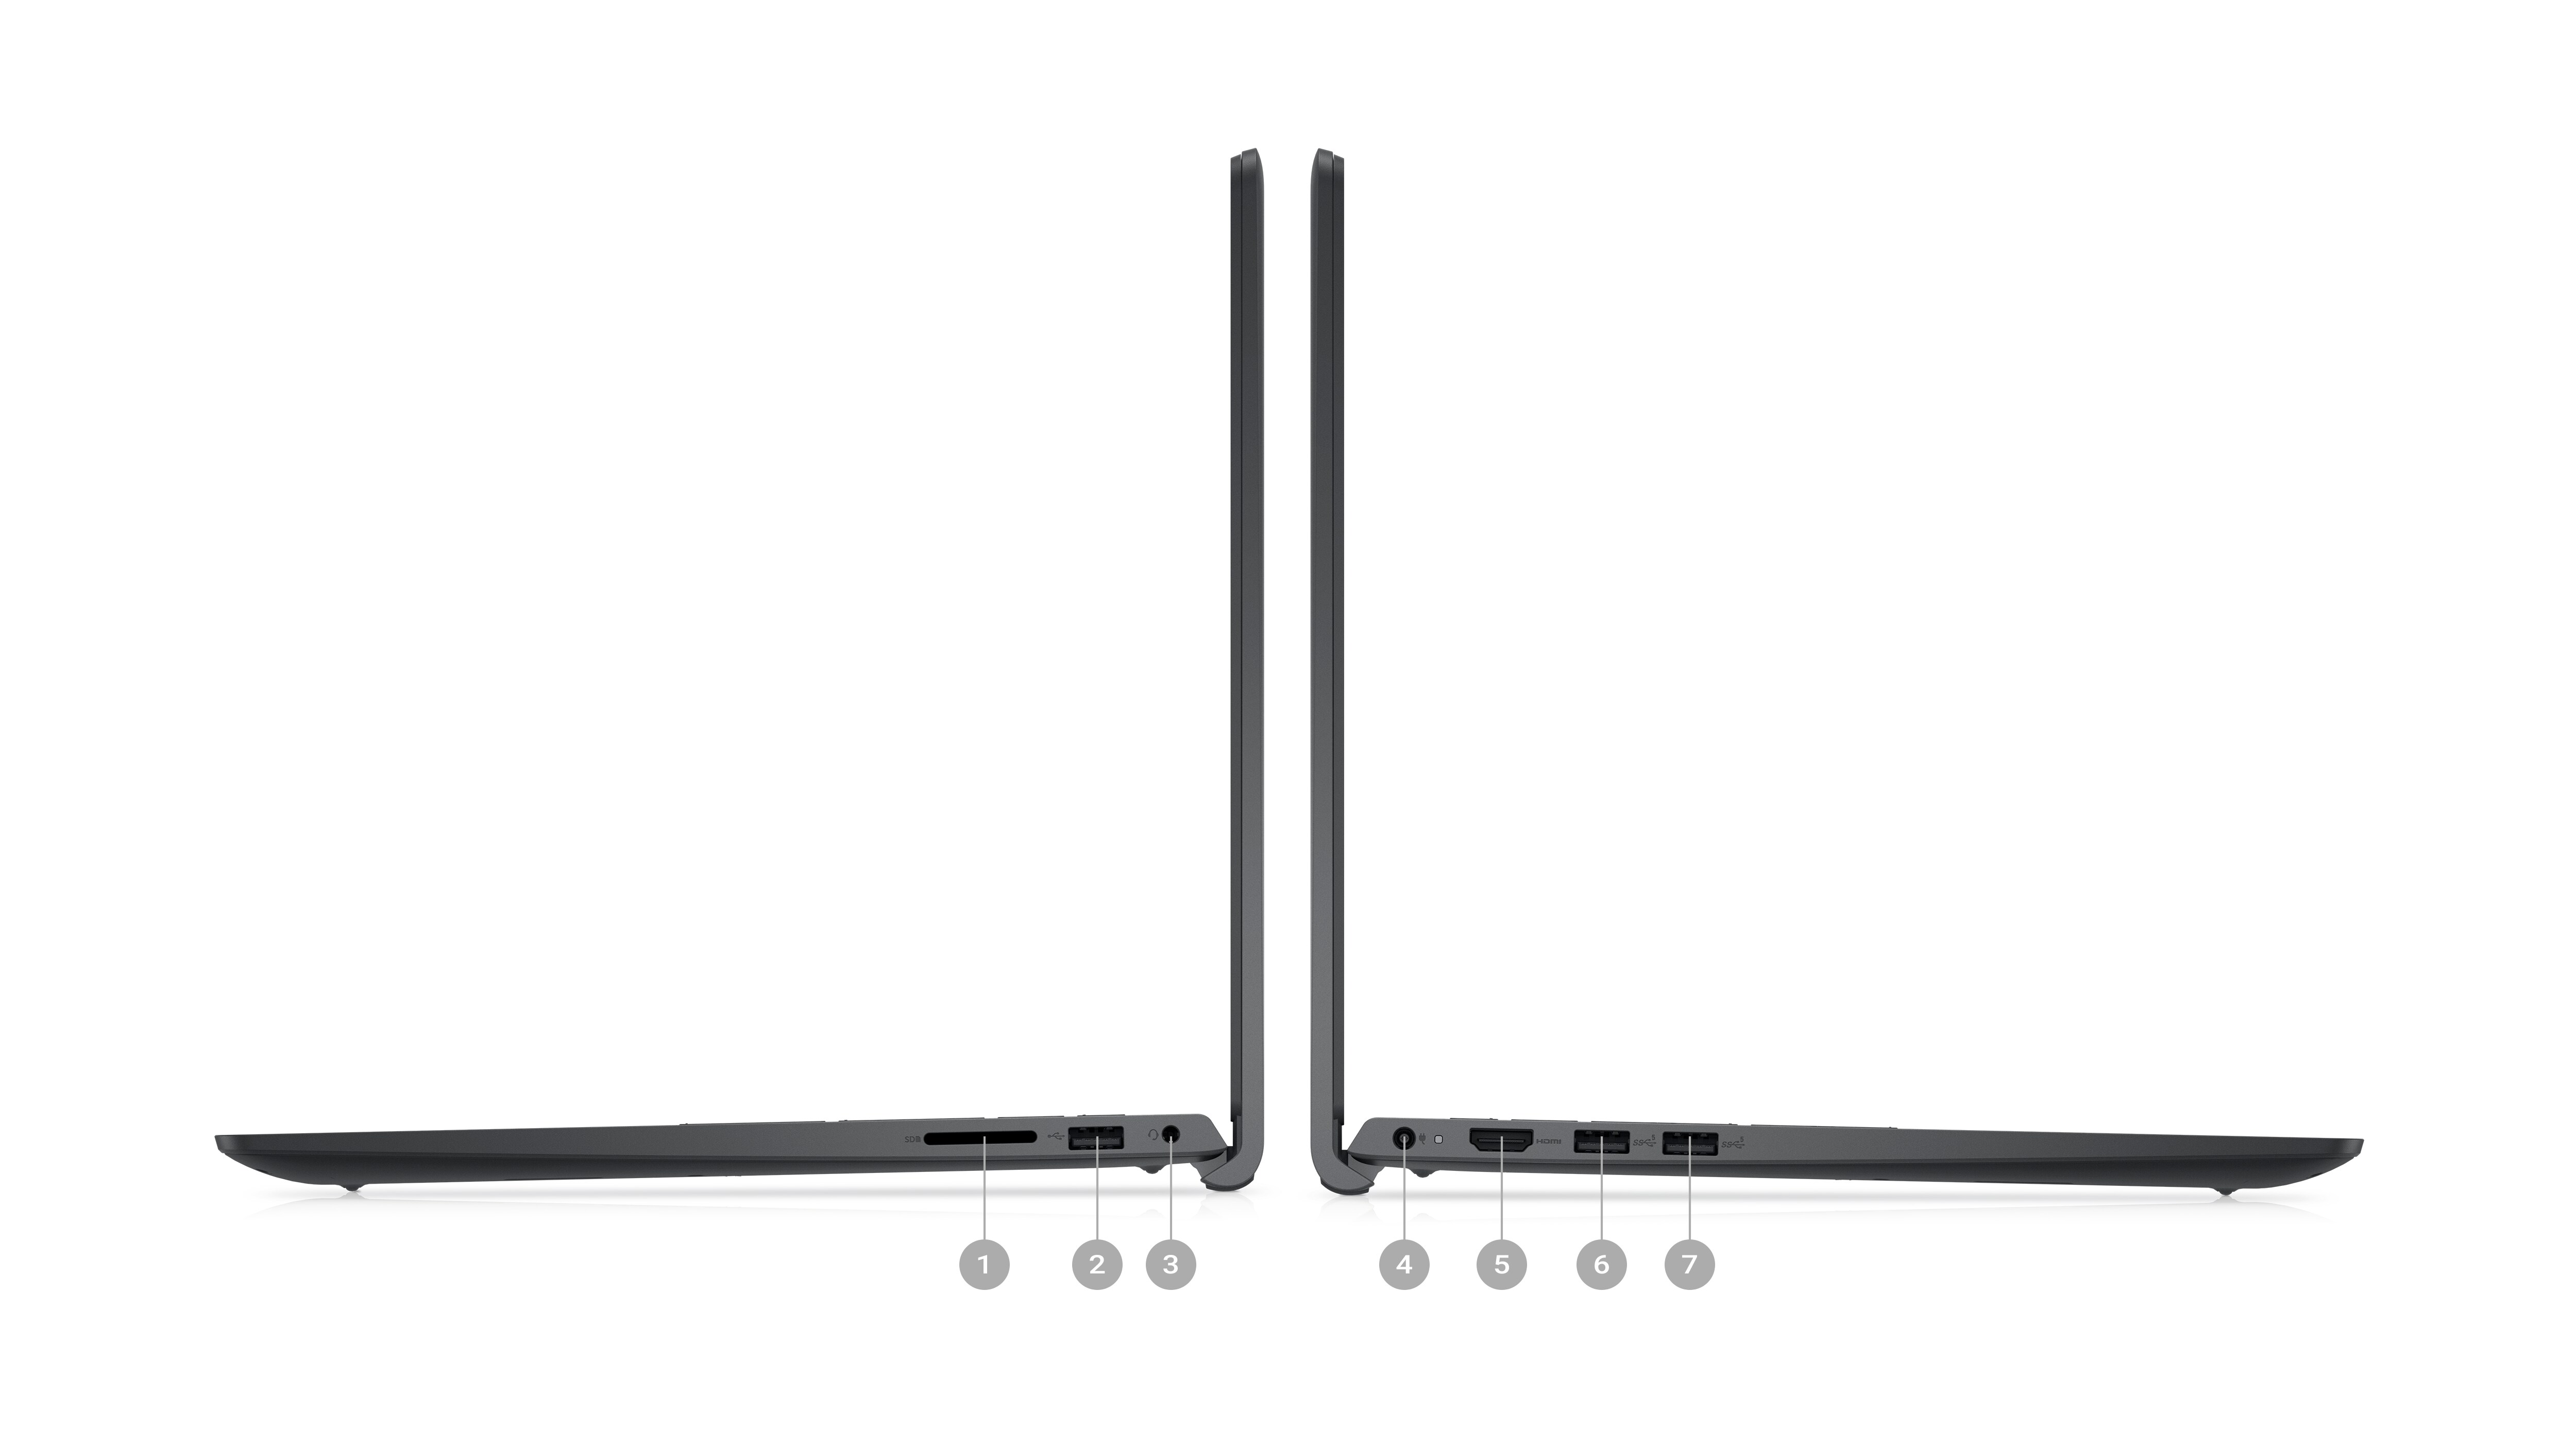 Photo de deux ordinateurs portables Dell Inspiron 15 3525 vus de côté avec les chiffres 1 à 7 indiquant les ports sur les produits.